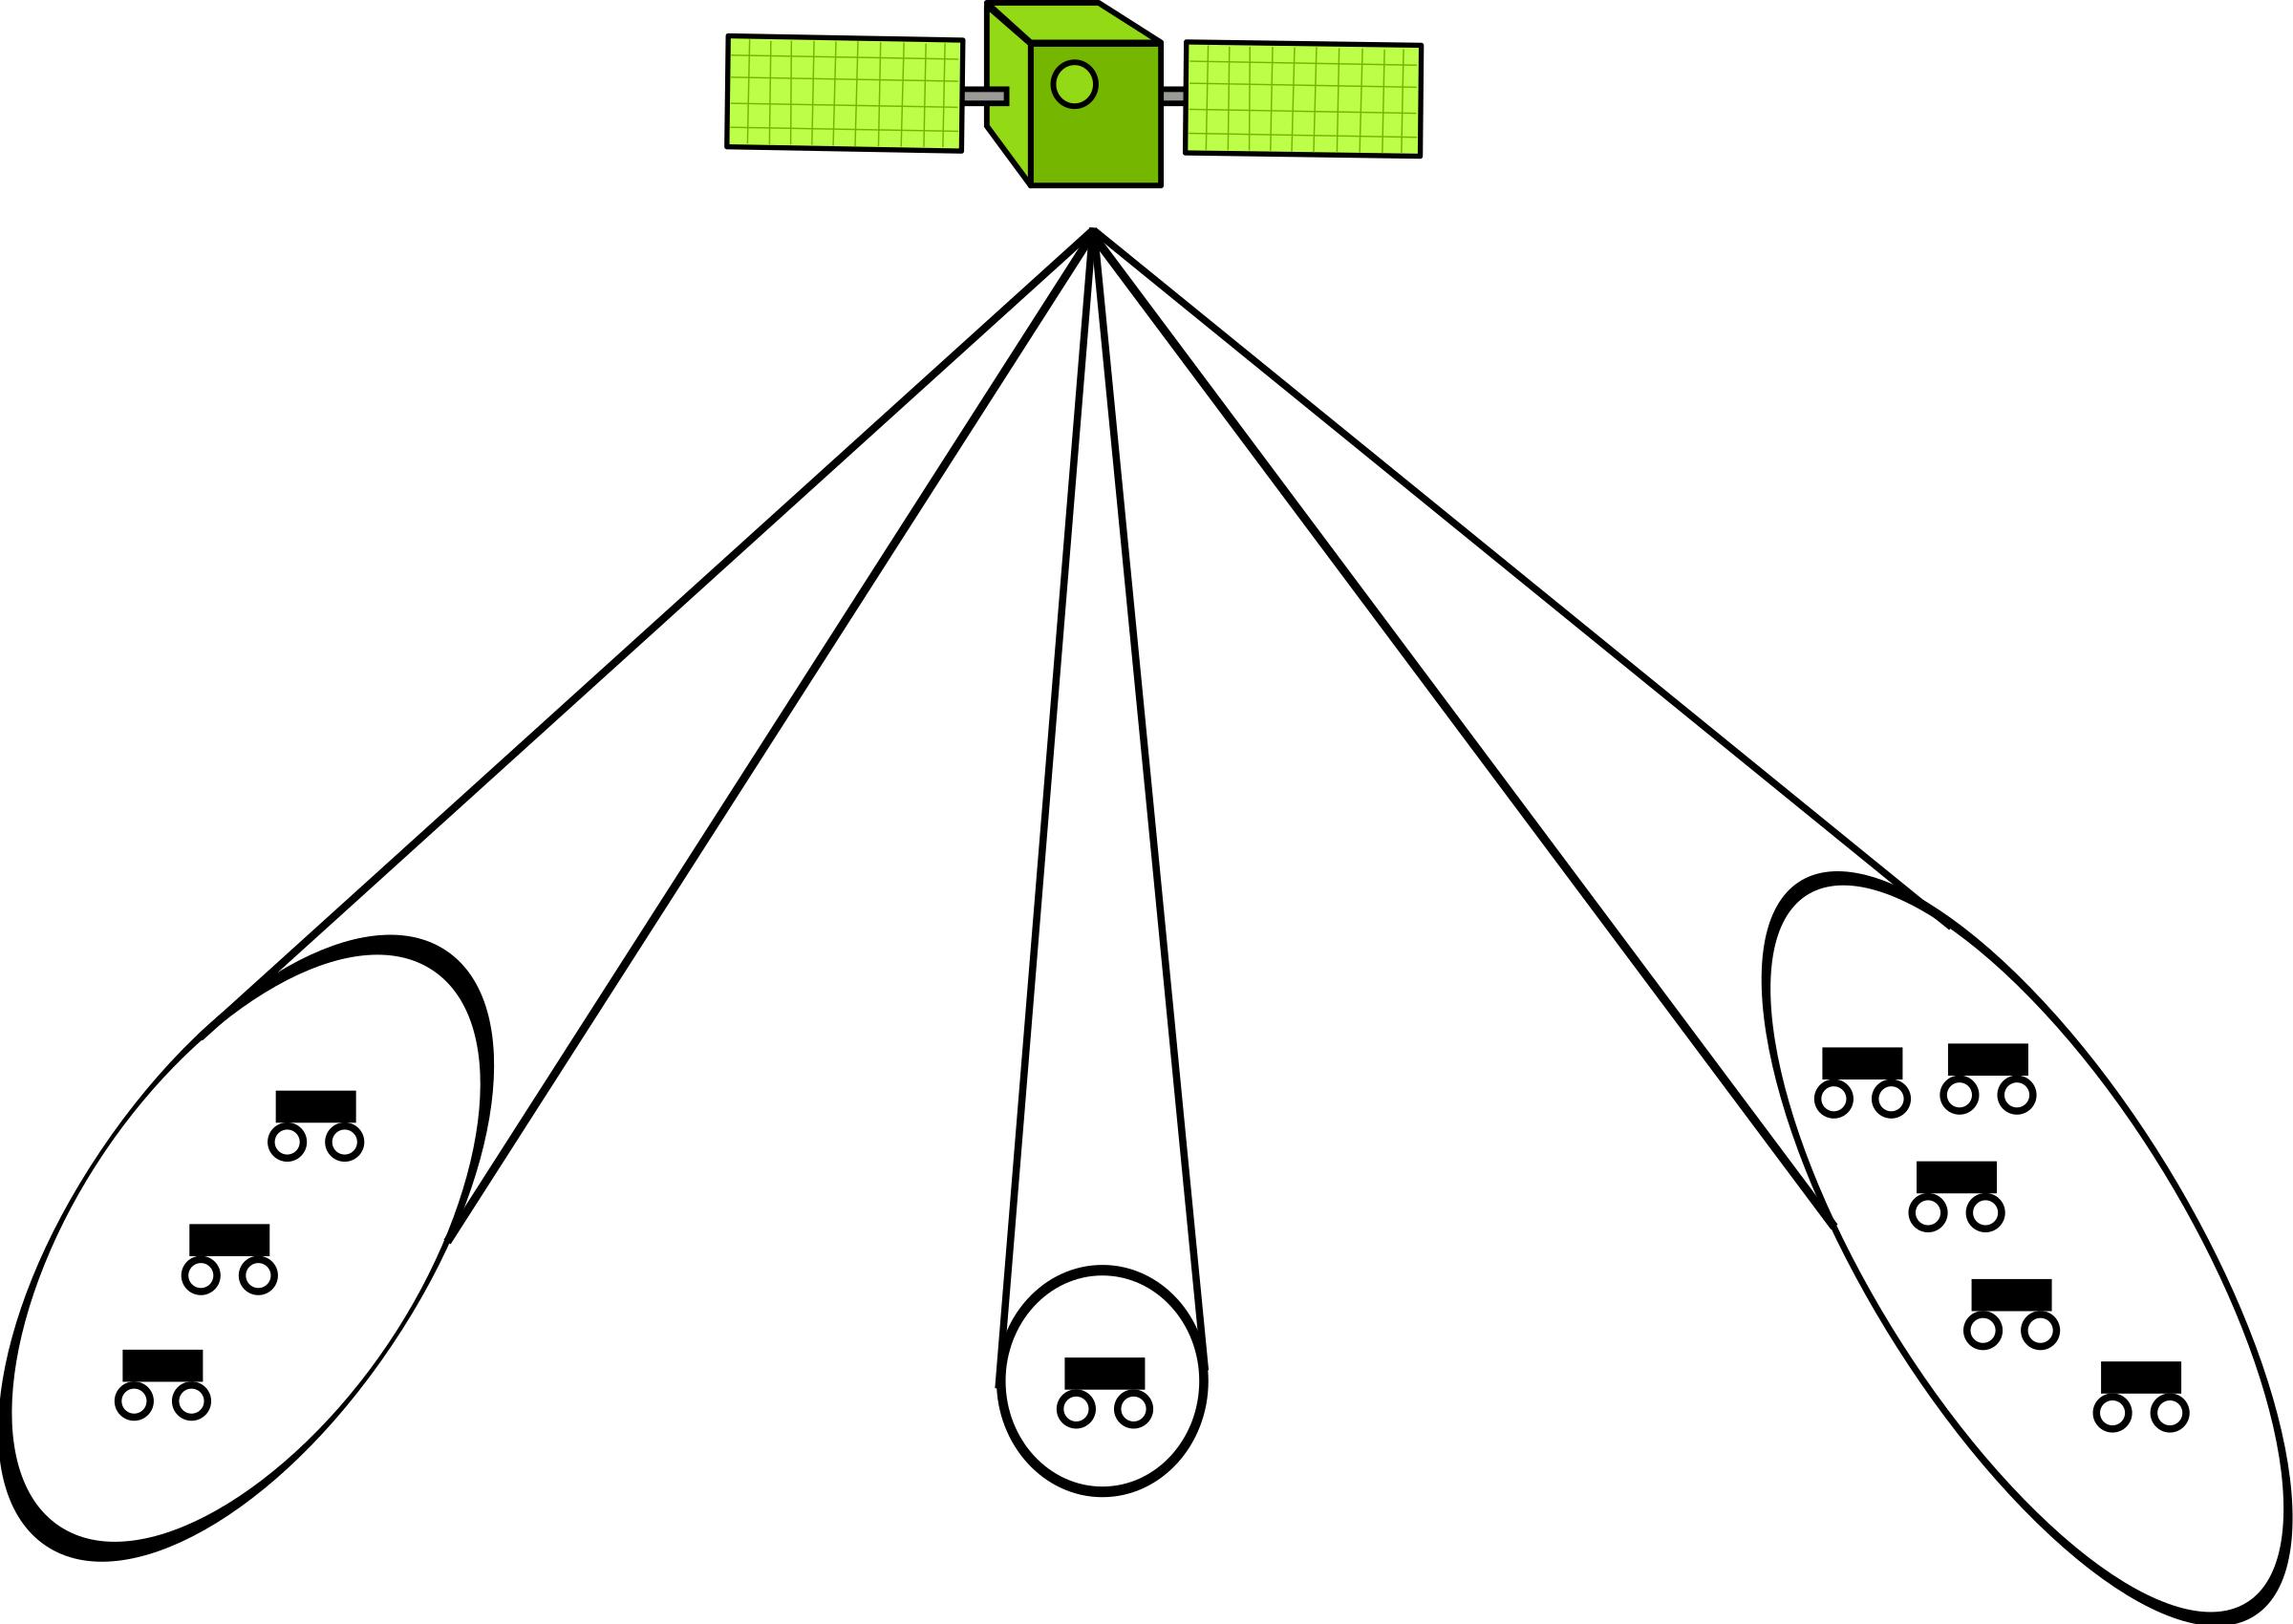 Adaptive beamforming using satellites icons